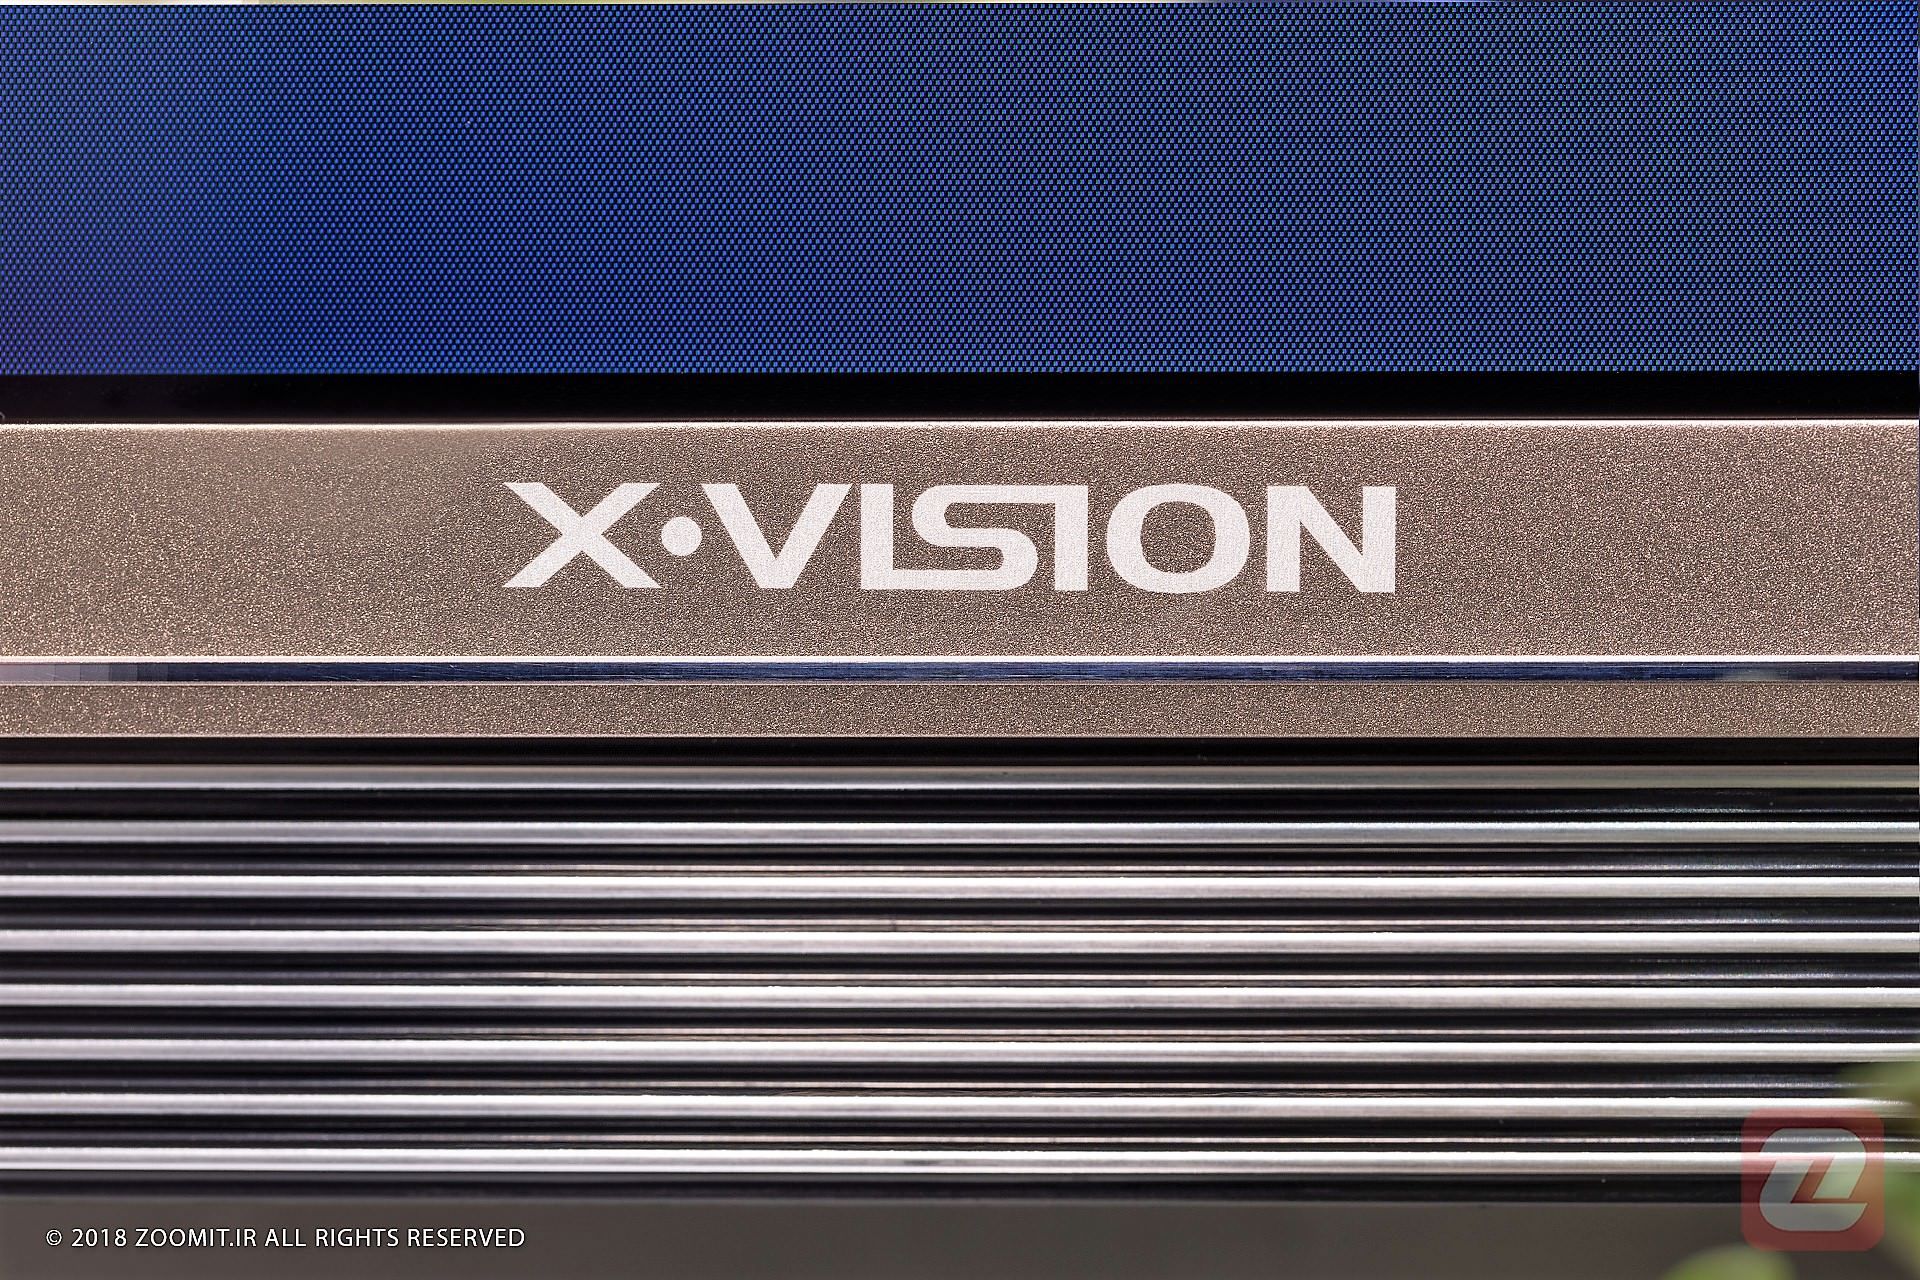 بررسی تلویزیون Xvision / ایکس ویژن XKU635 